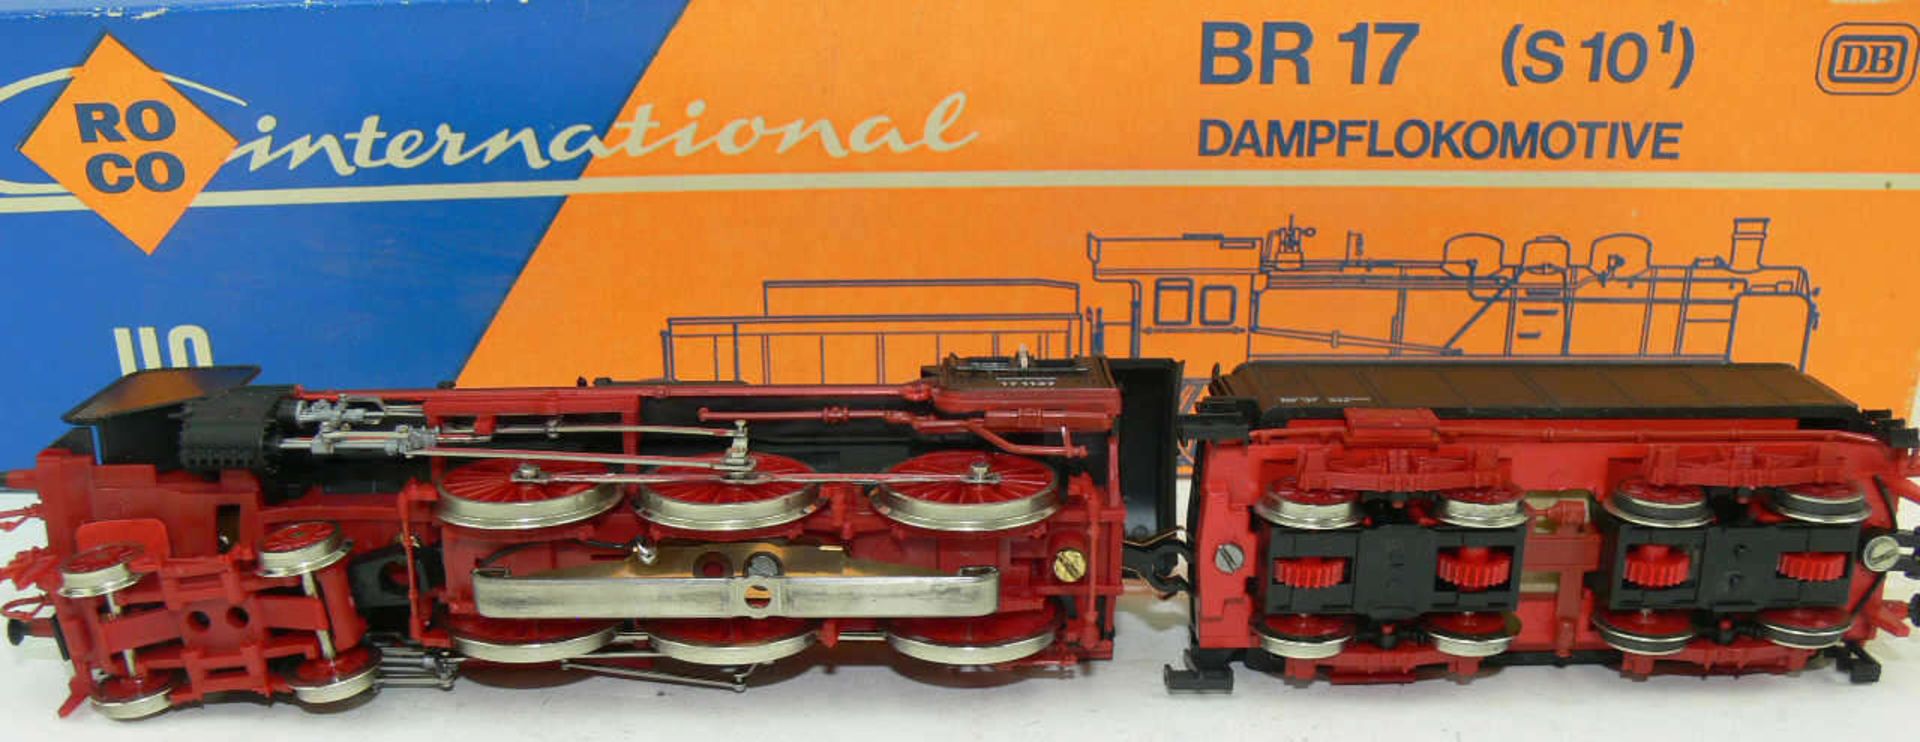 Roco 04115A, Dampflokomotive mit Schlepptender BR 17 (S10) der DR. BN 17 1137. Sehr guter Zustand in - Bild 2 aus 2